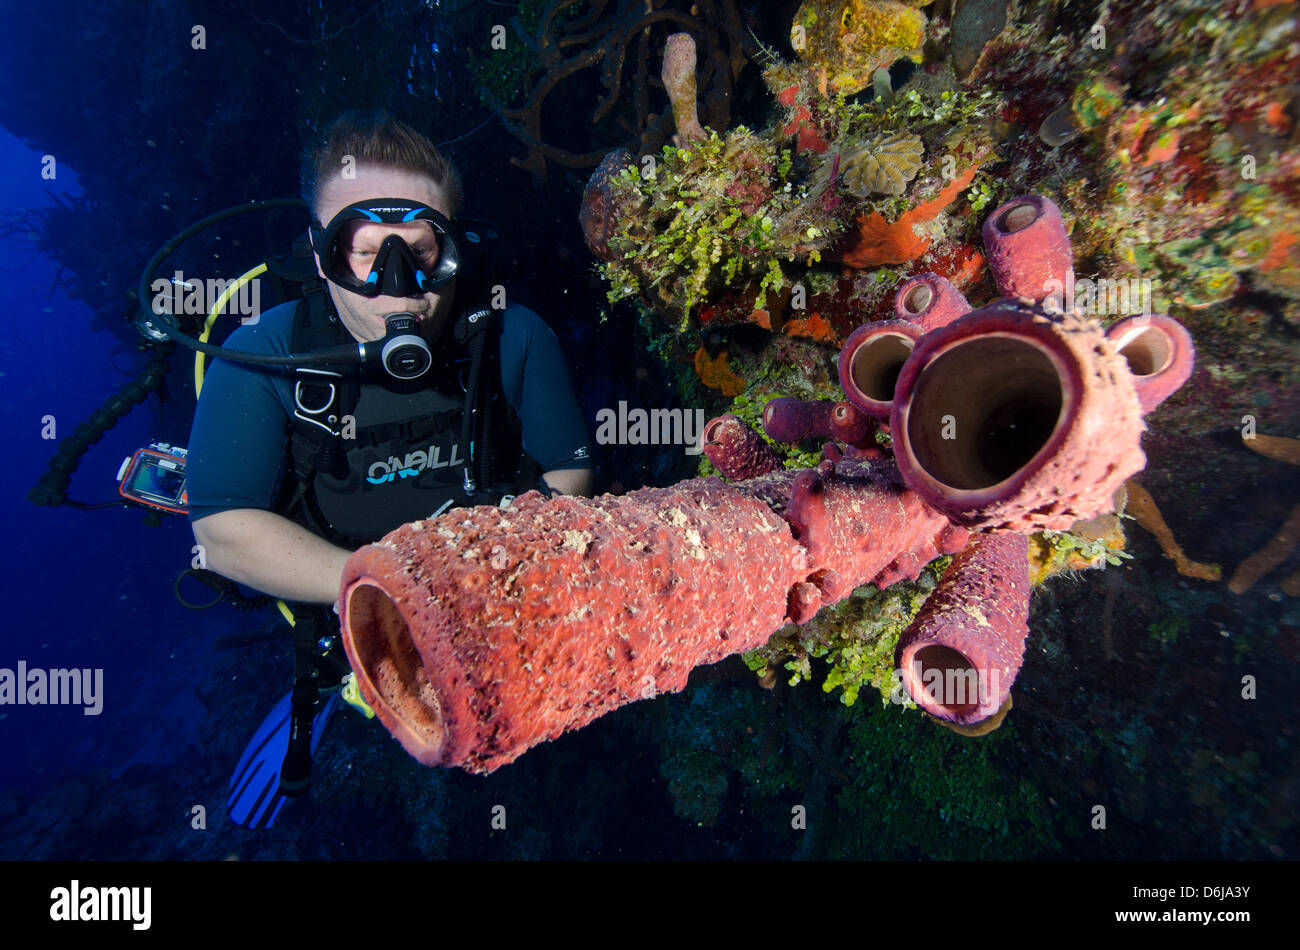 Le tube plongeur bénéficiant d'éponges sur un mur de la plongée dans les îles Turks et Caicos, Antilles, Caraïbes, Amérique Centrale Banque D'Images